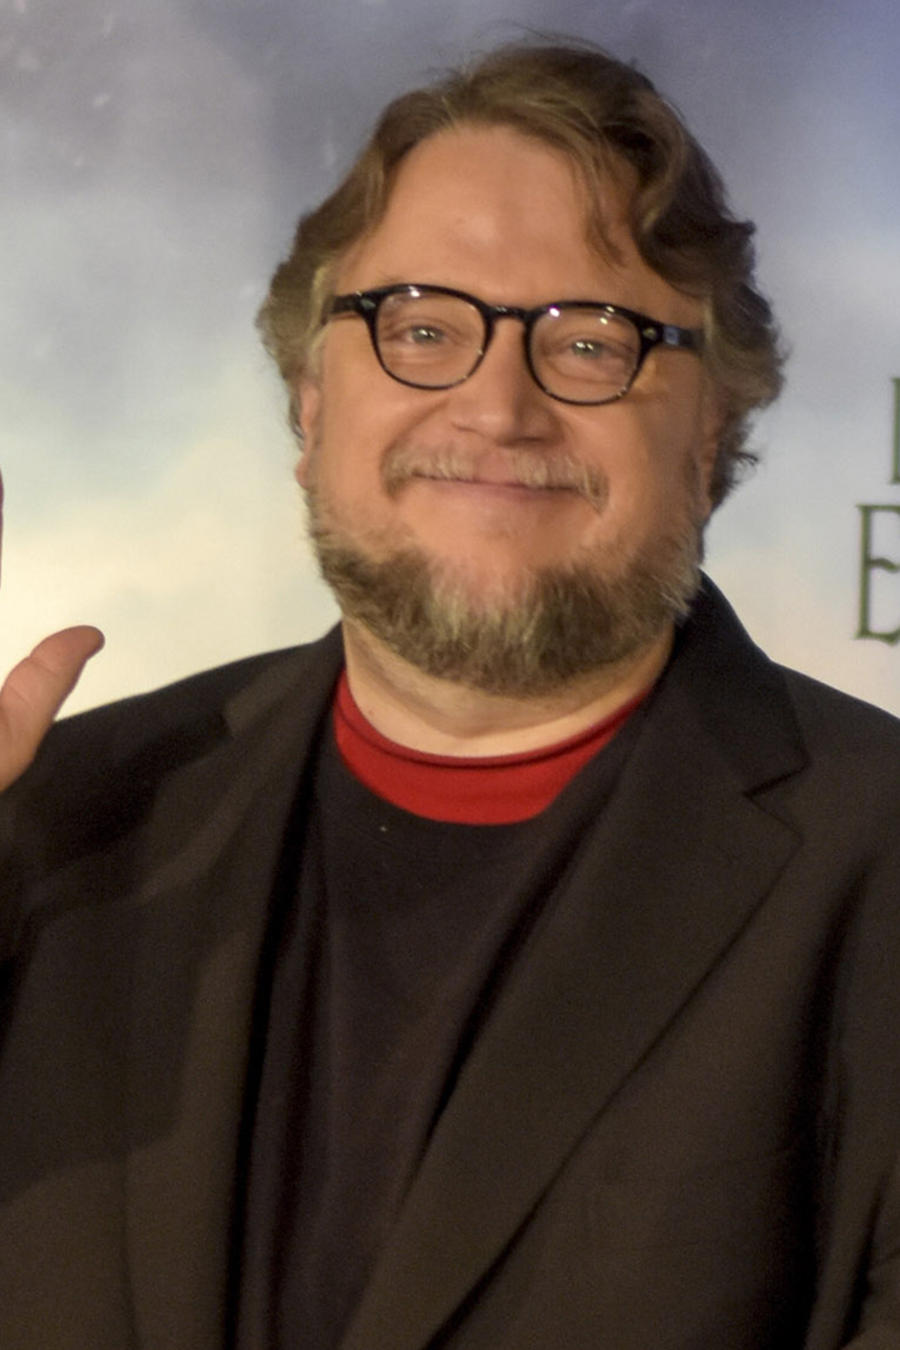 Guillermo del Toro en Barcelona